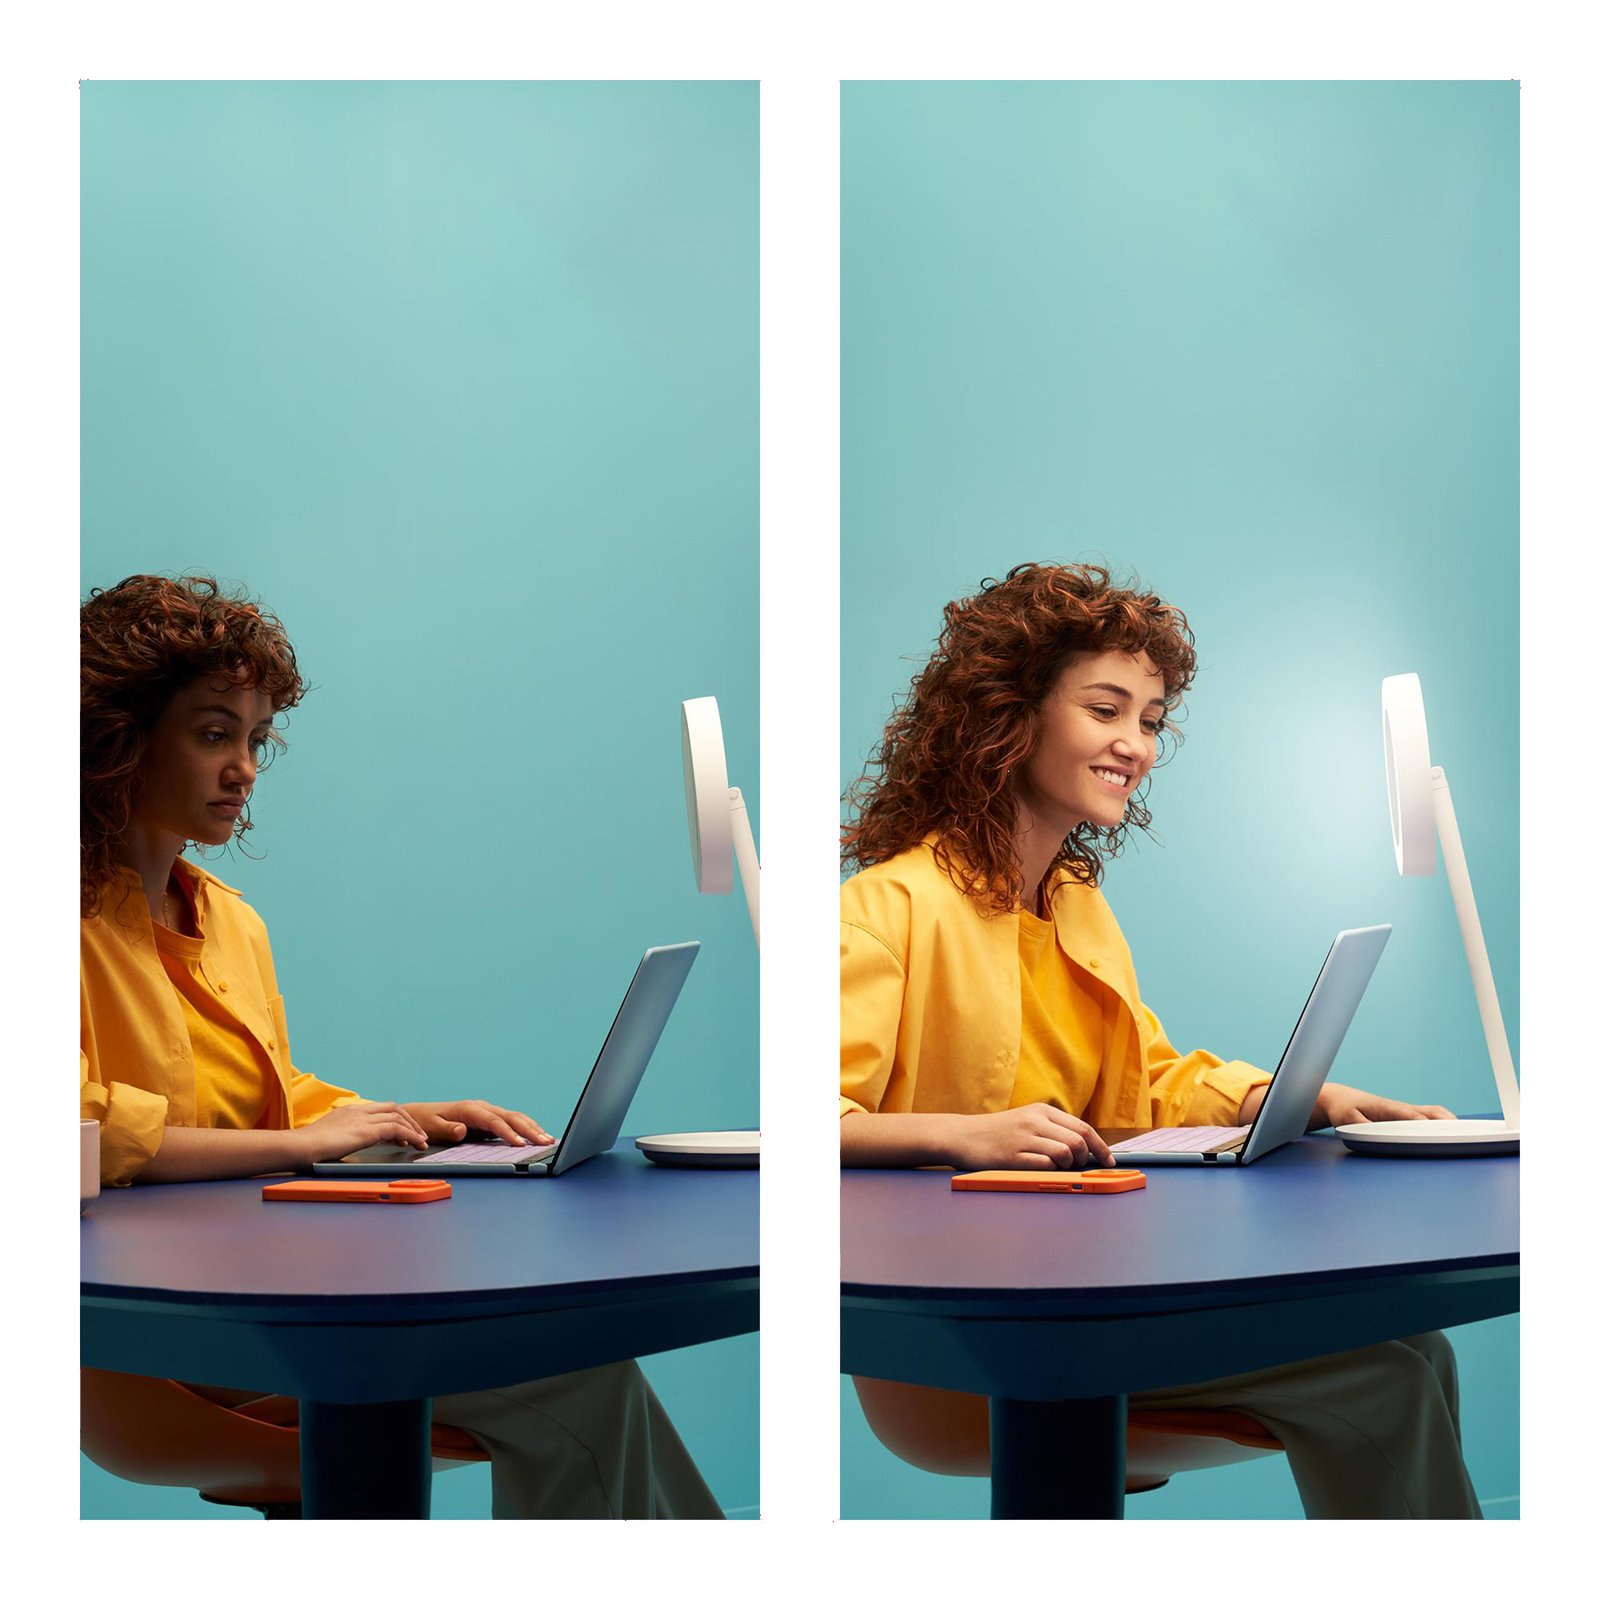 WiZ Portrait LED asztali világítás gyűrűfény CCT